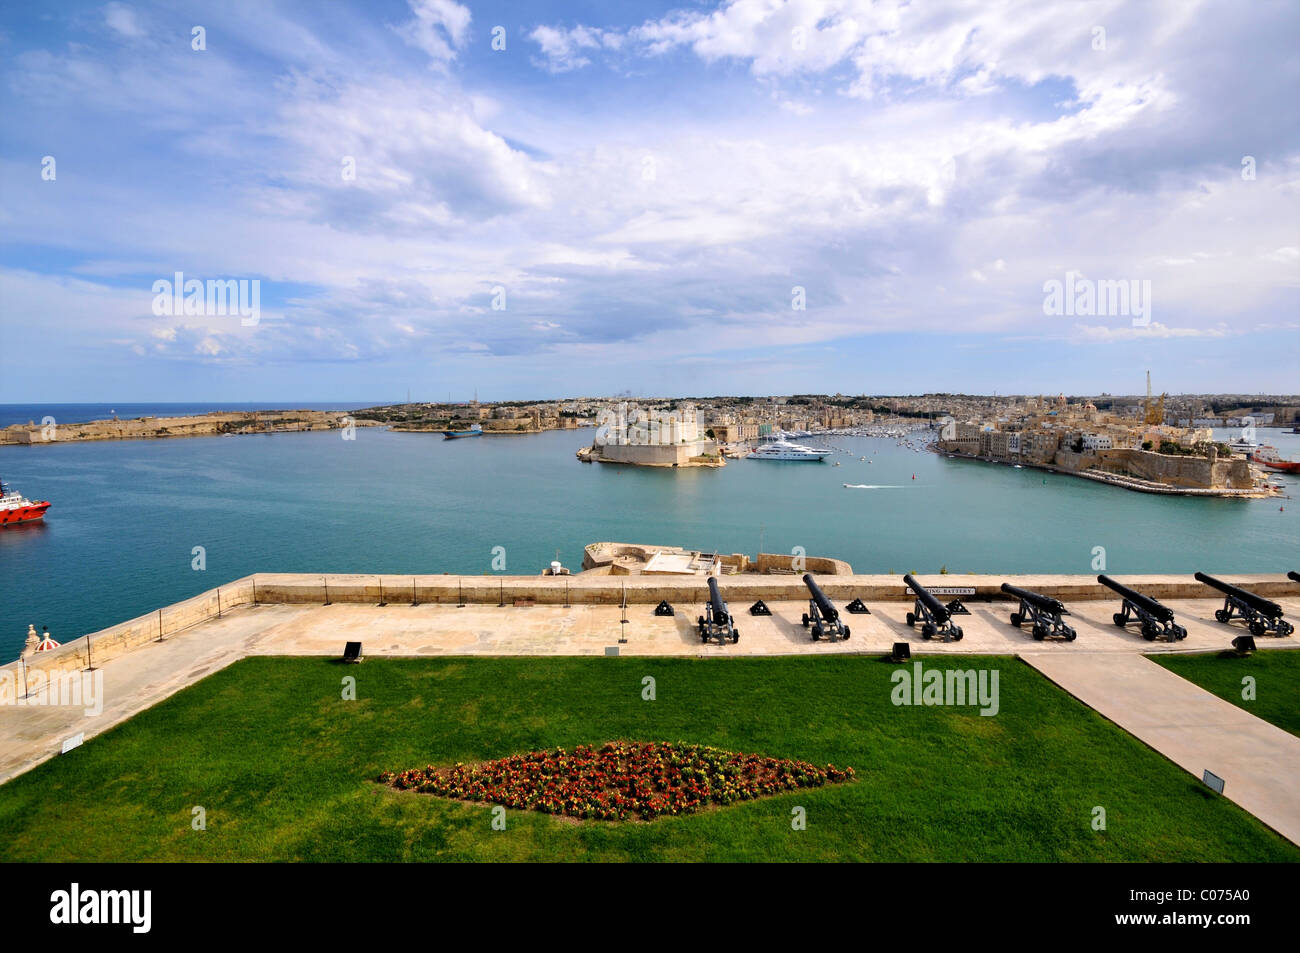 Grand harbor La Valletta Malta, Harbour Stock Photo